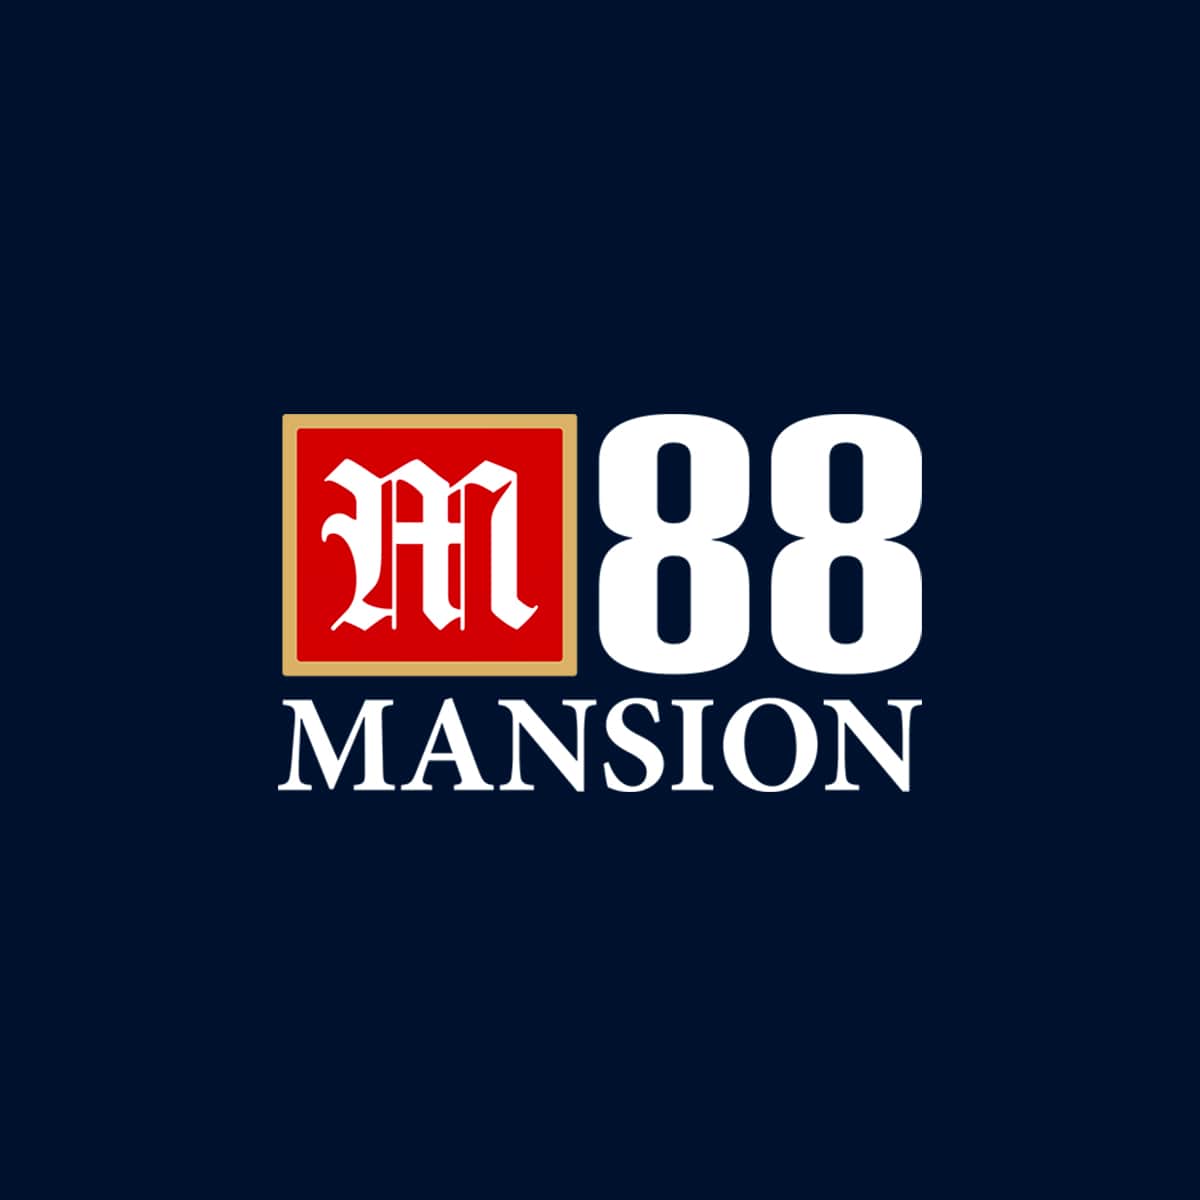 Mansion88 M88 Logo